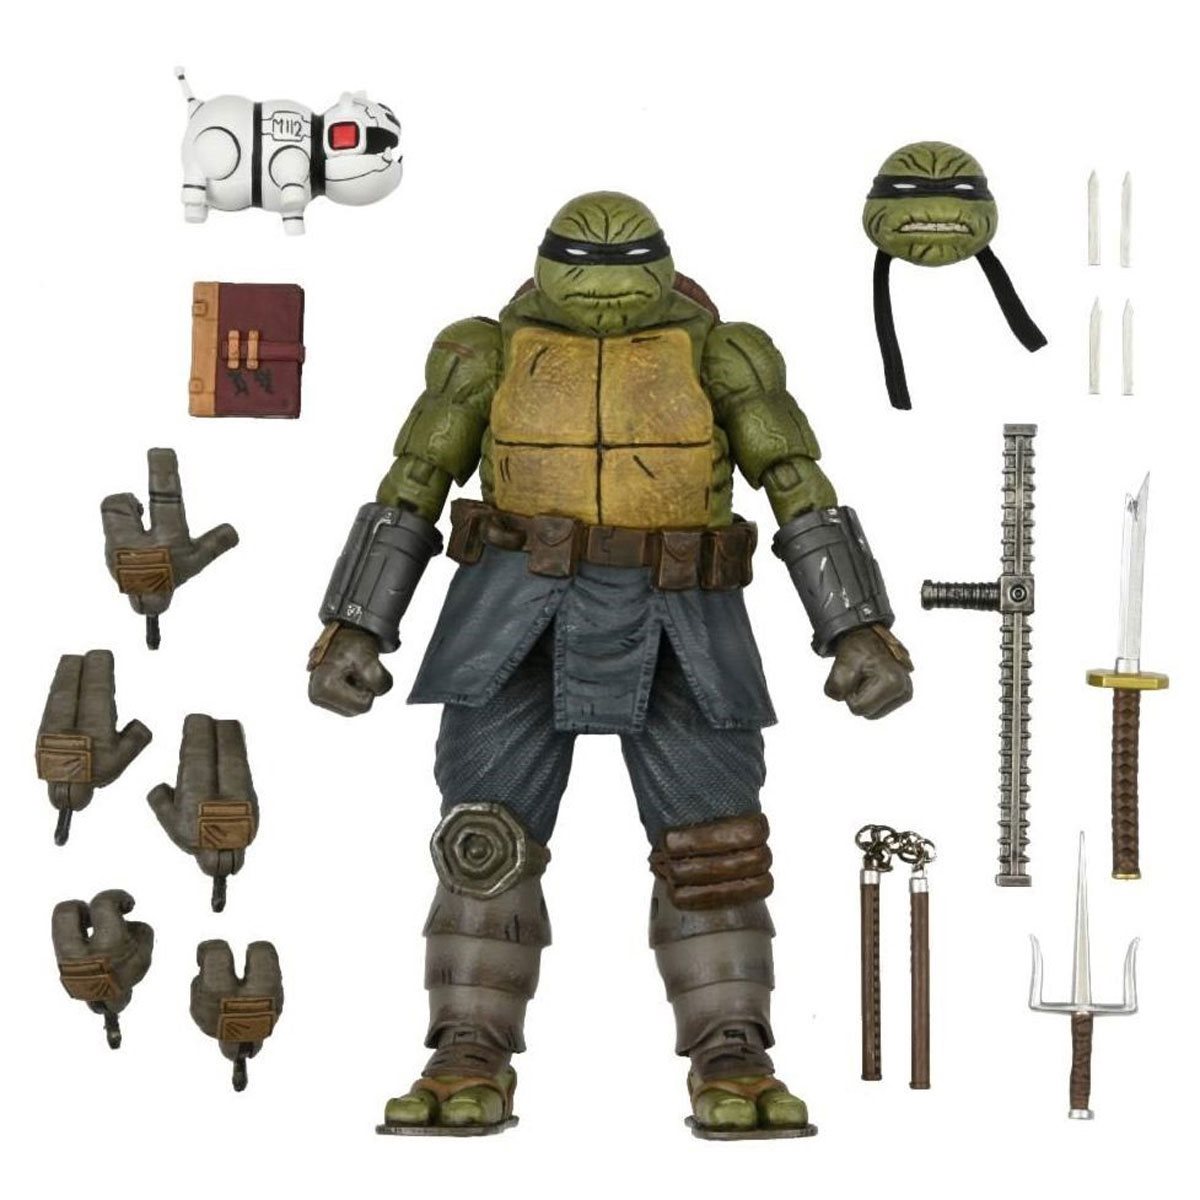 NEW 2014 Teenage Mutant Ninja Turtles Movie TMNT Set of 4 Action Figures Toys EE 